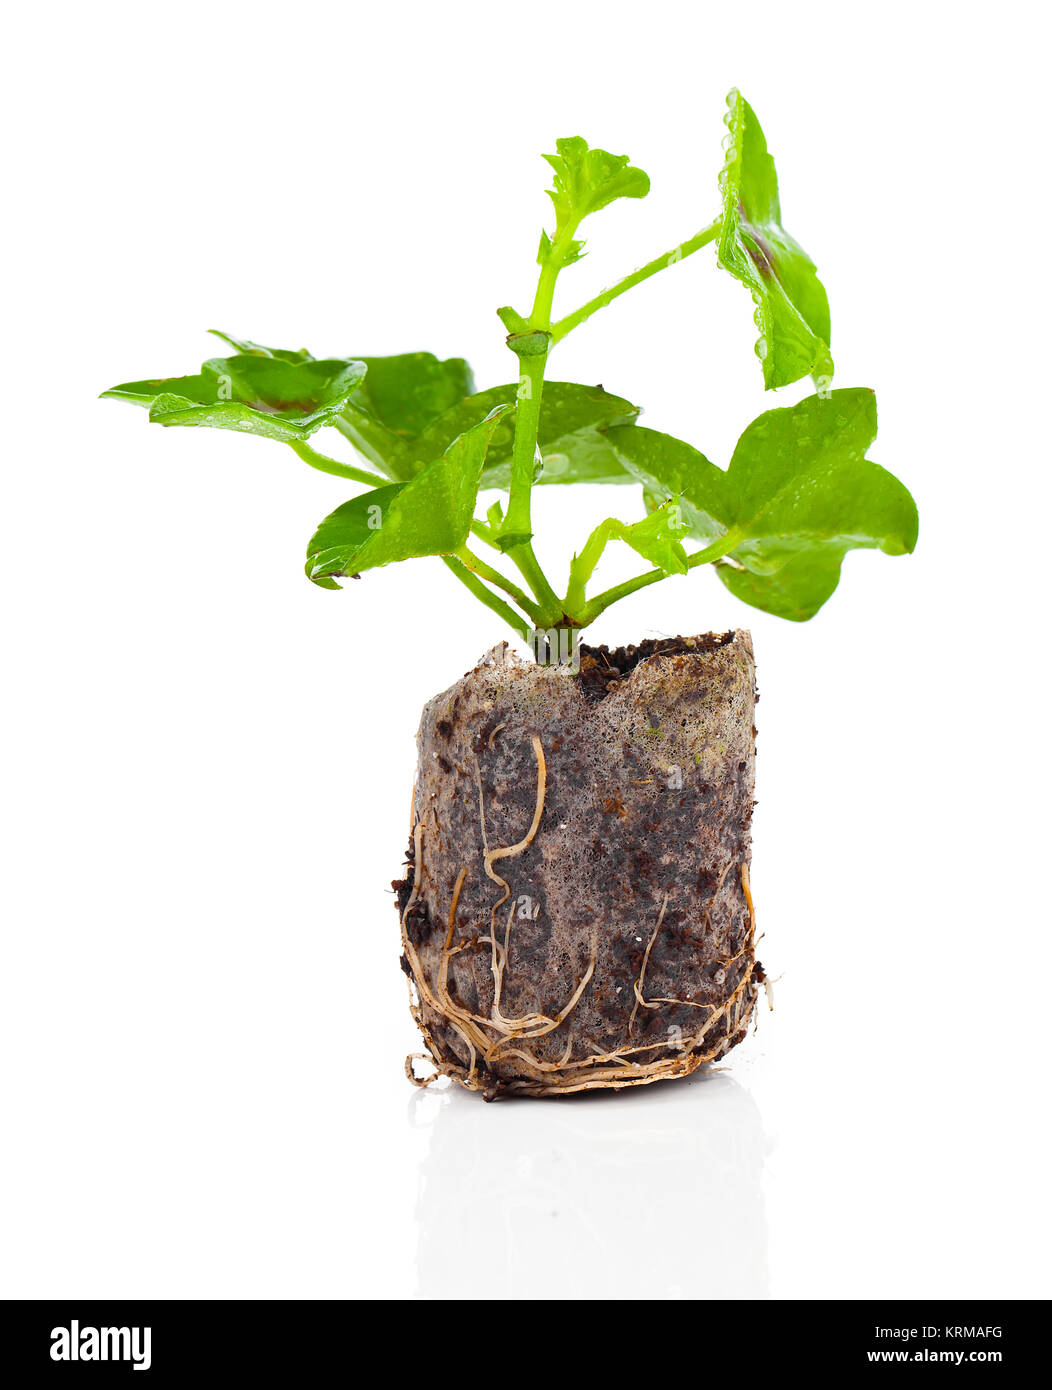 Geranium mit Wurzeln bereit zu pflanzen Stock Photo